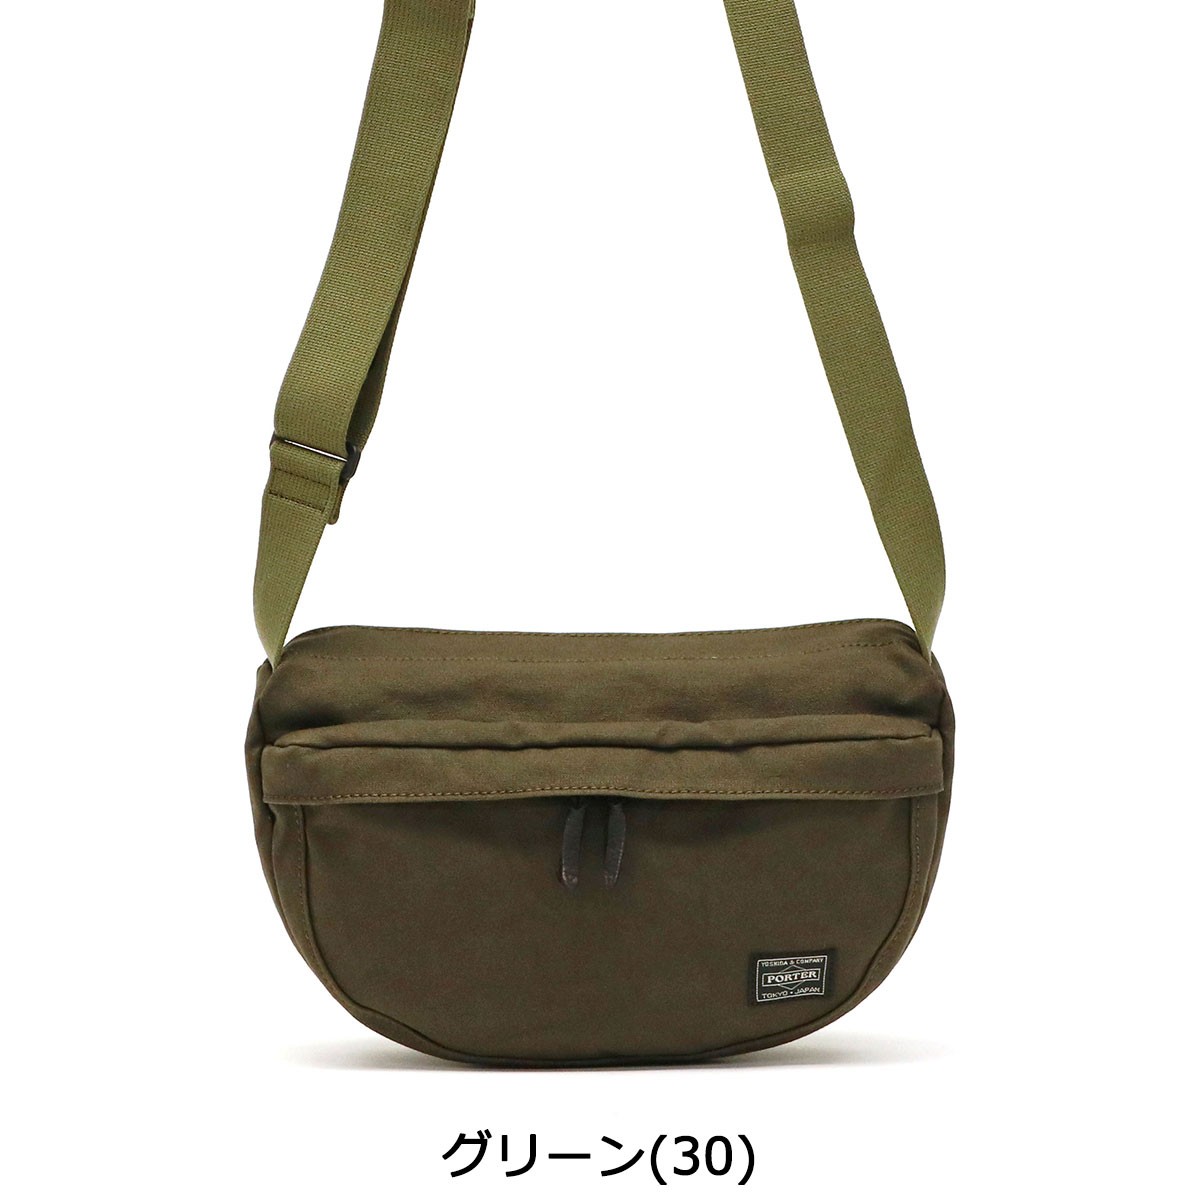  Porter свекла сумка на плечо 727-09044 Yoshida bag PORTER BEAT SHOULDER BAG мужской женский маленький бренд 40 плата 50 плата легкий меньше наклонный .. сделано в Японии 